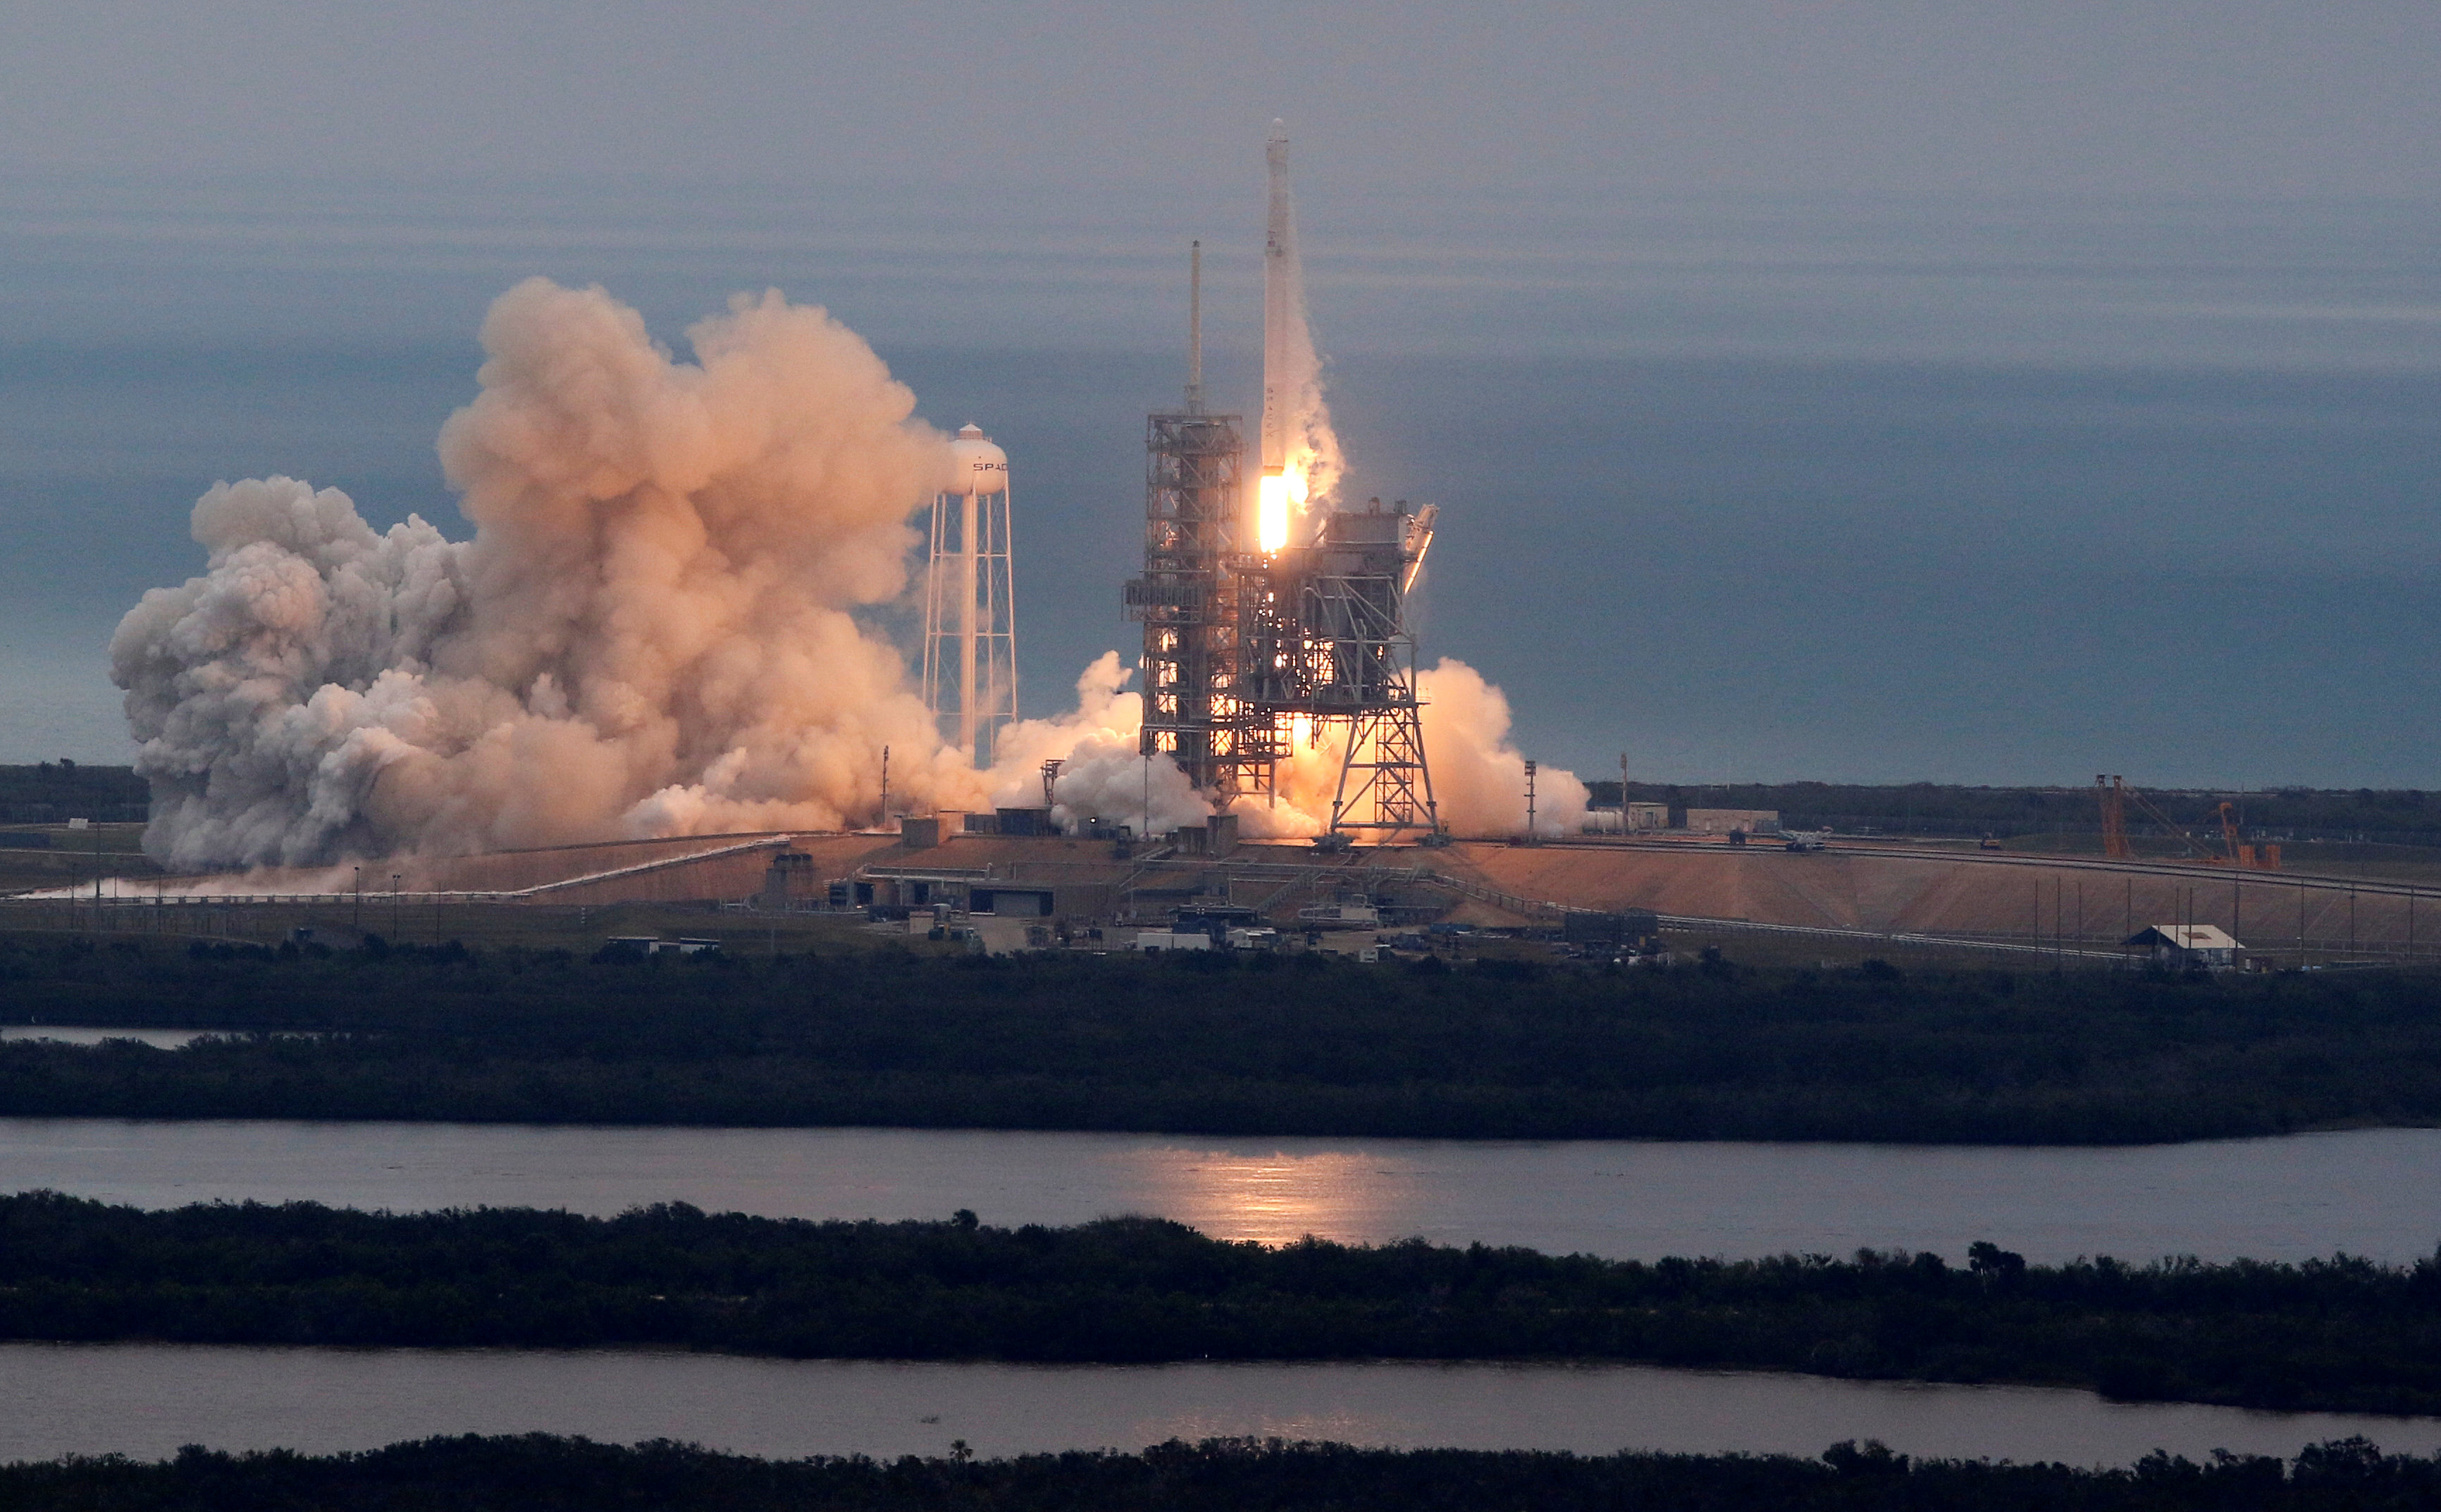 انطلاق صاروخ فالكون 9 التابع لشركة سبيس اكس من فلوريدا